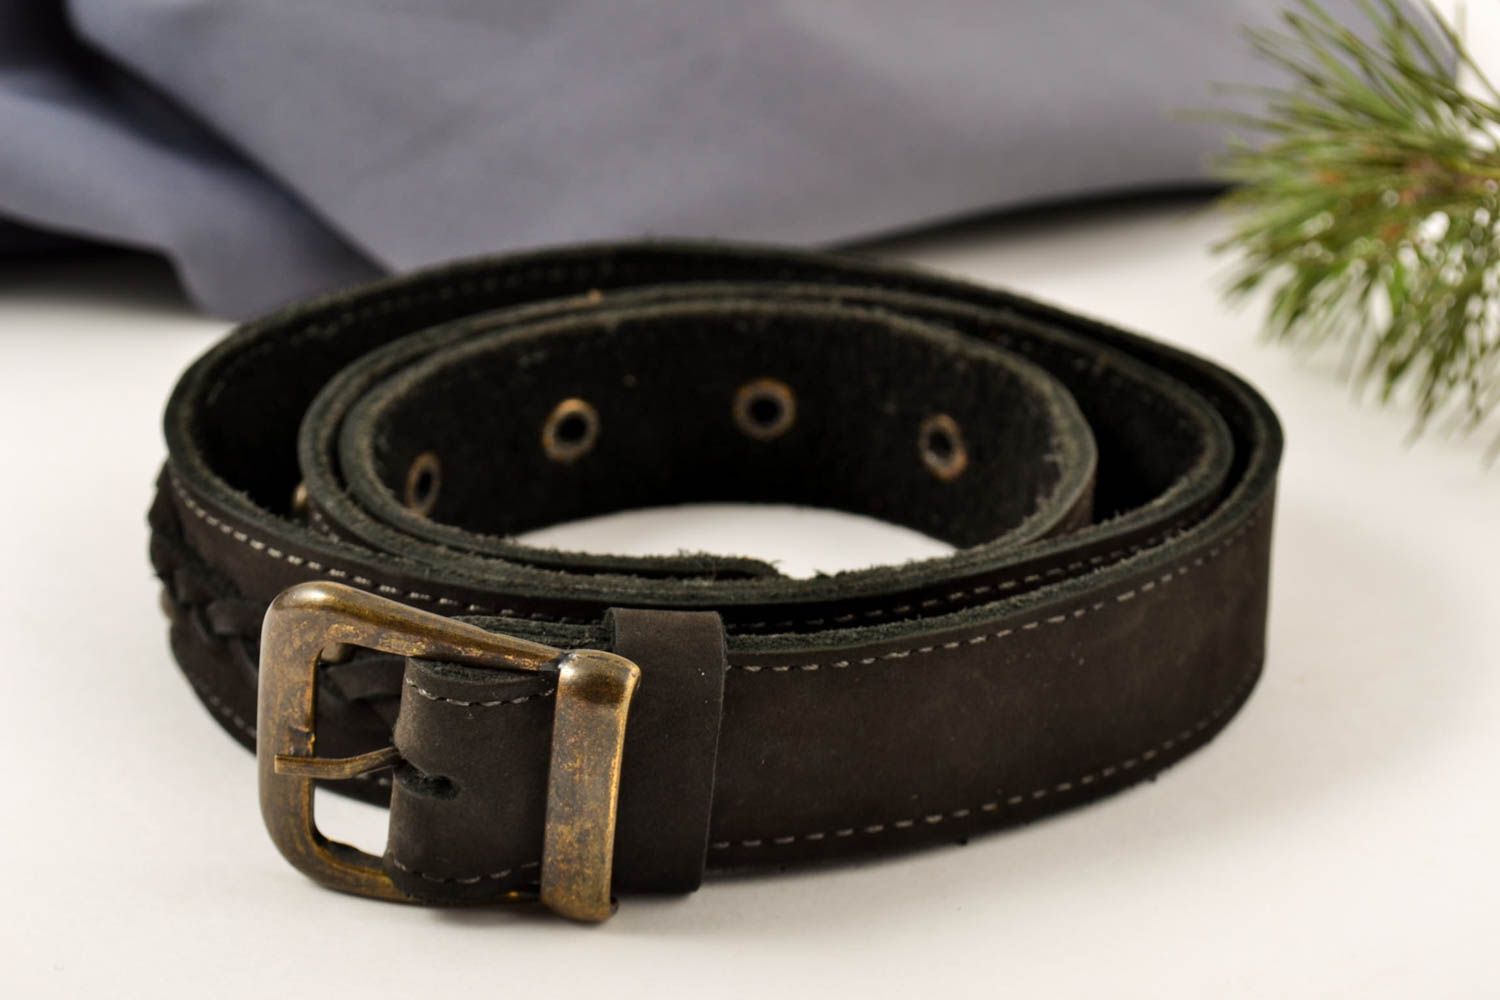 Cinturón de cuero hecho a mano ropa masculina estilosa accesorio de moda foto 1